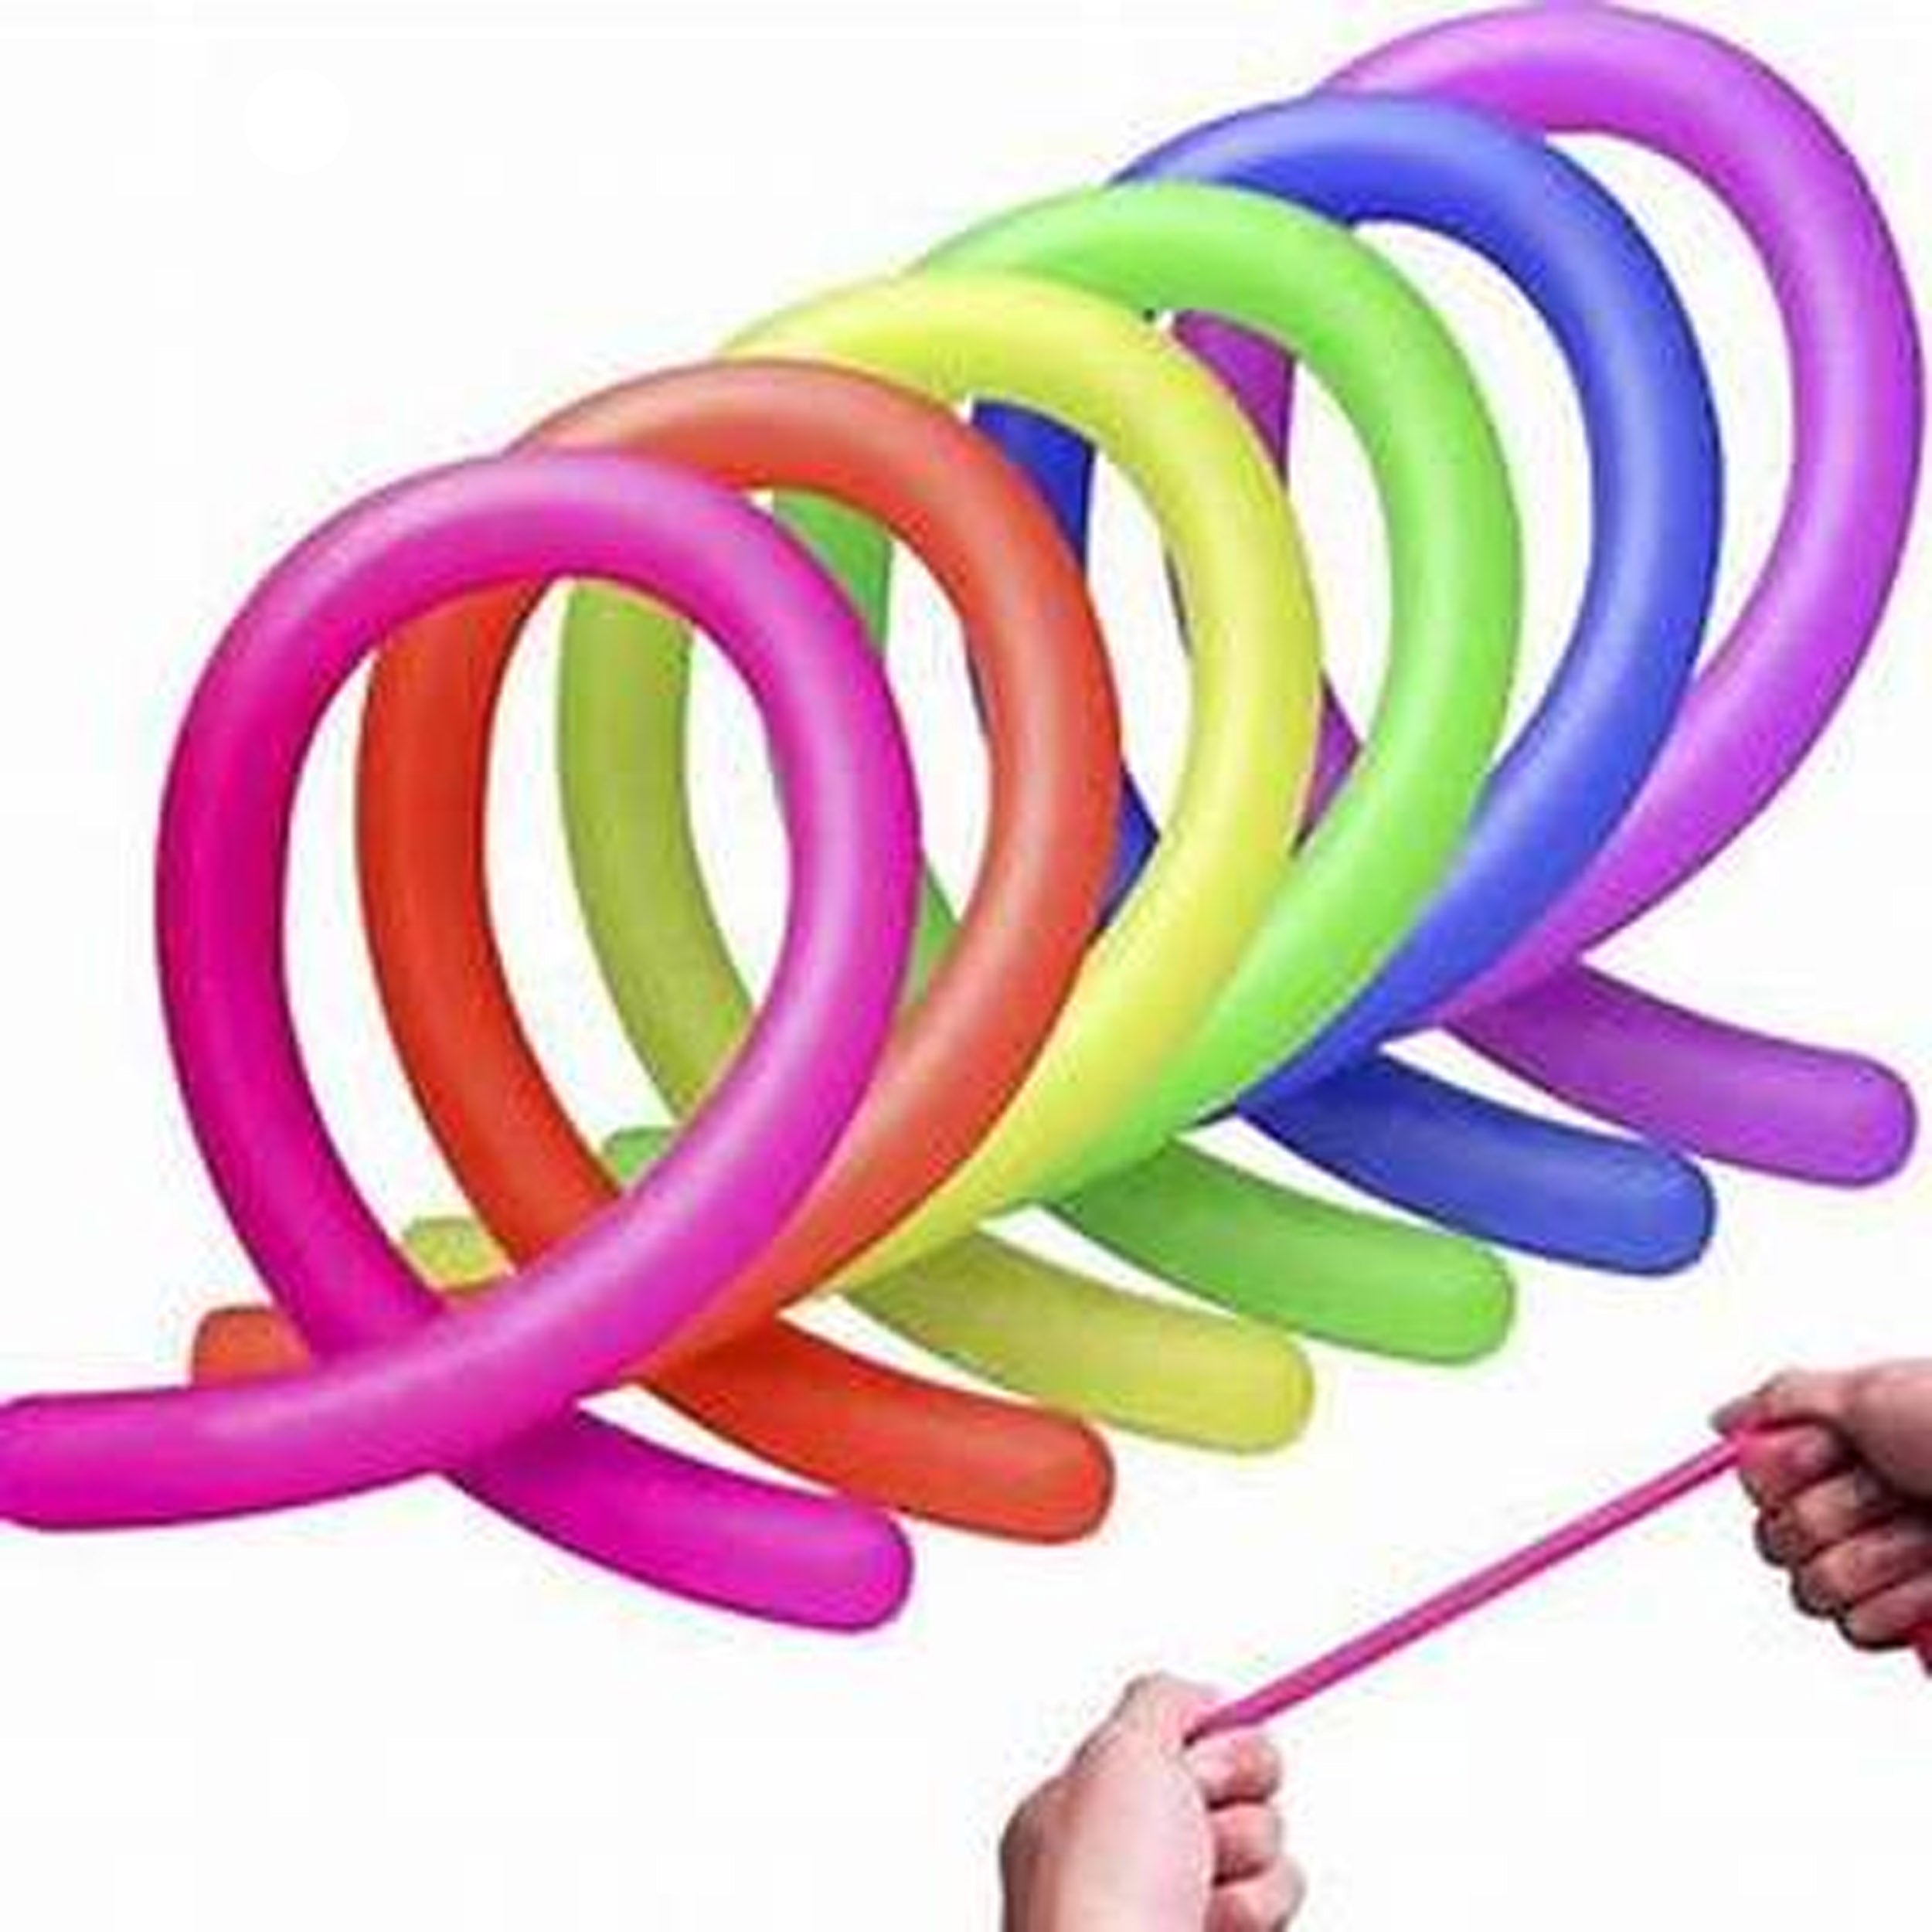 AWAVM 6 pcs Jouets de Corde sensoriels Stretch colorés, Fidget Rope Toy,  Jouet en Corde Extensible, Relief Stretchy Rope, Décompresser Le Jouet